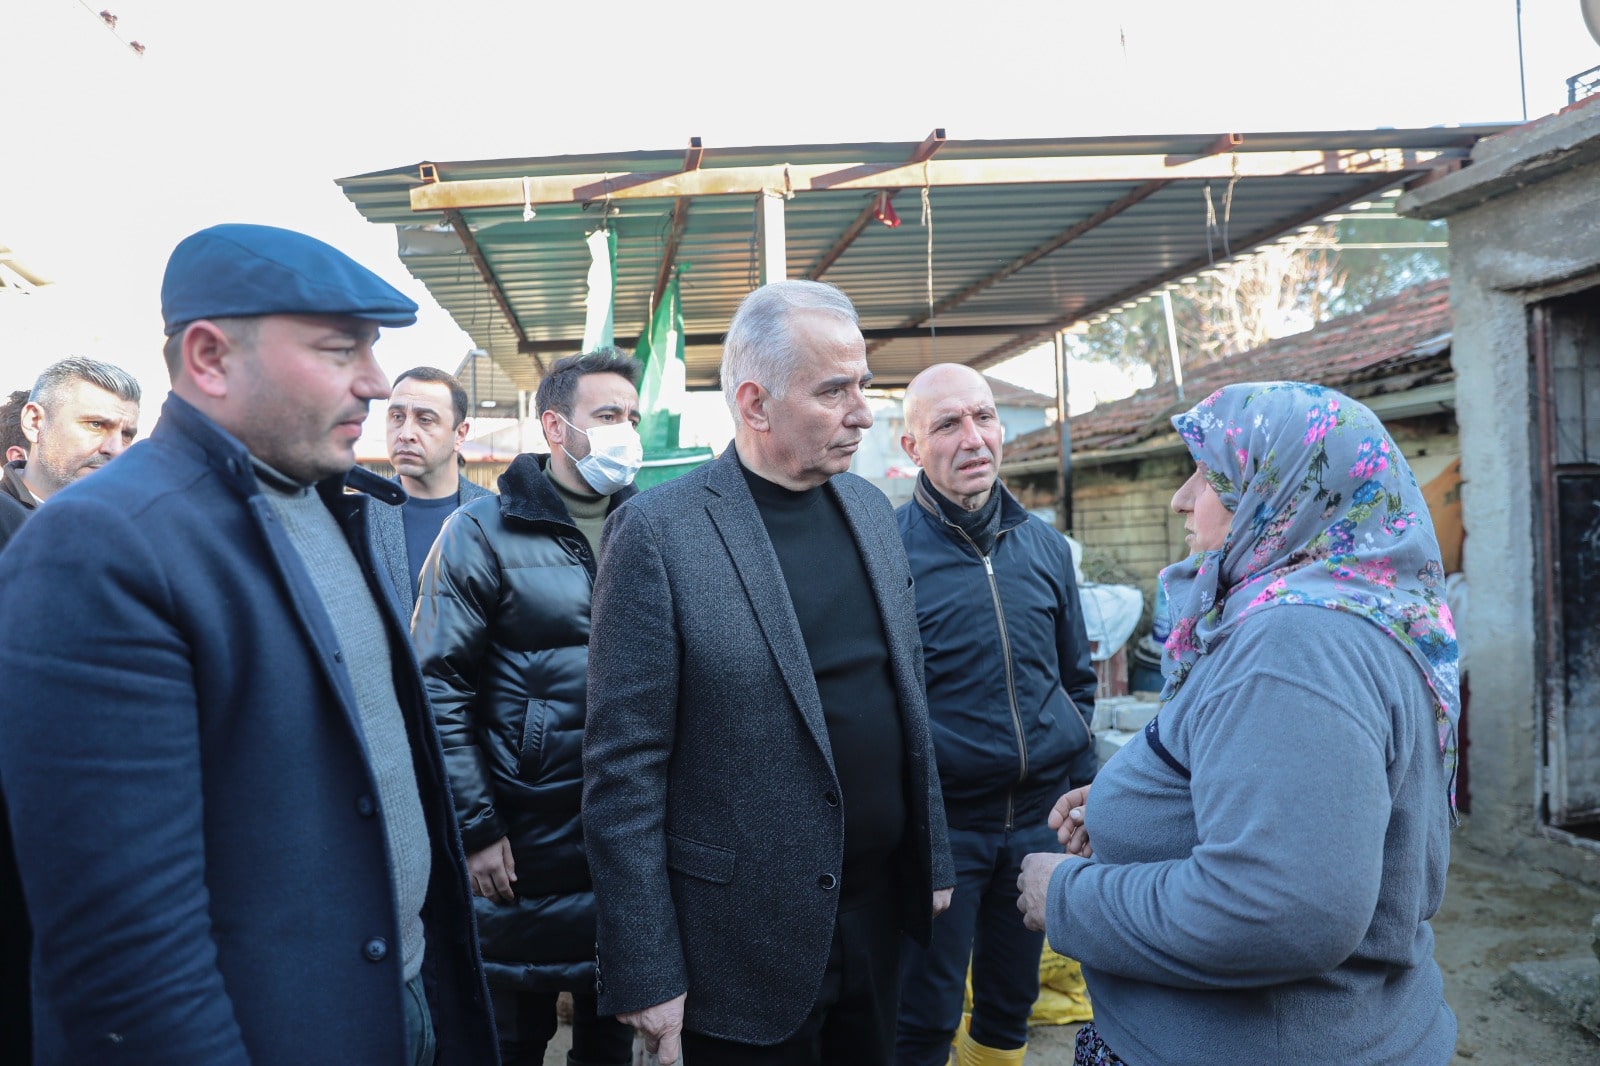 Baskan Zolan Saraykoyde sel bolgesini ziyaret etti 2 - Başkan Zolan, Sarayköy’de Sel Bölgesini Ziyaret Etti